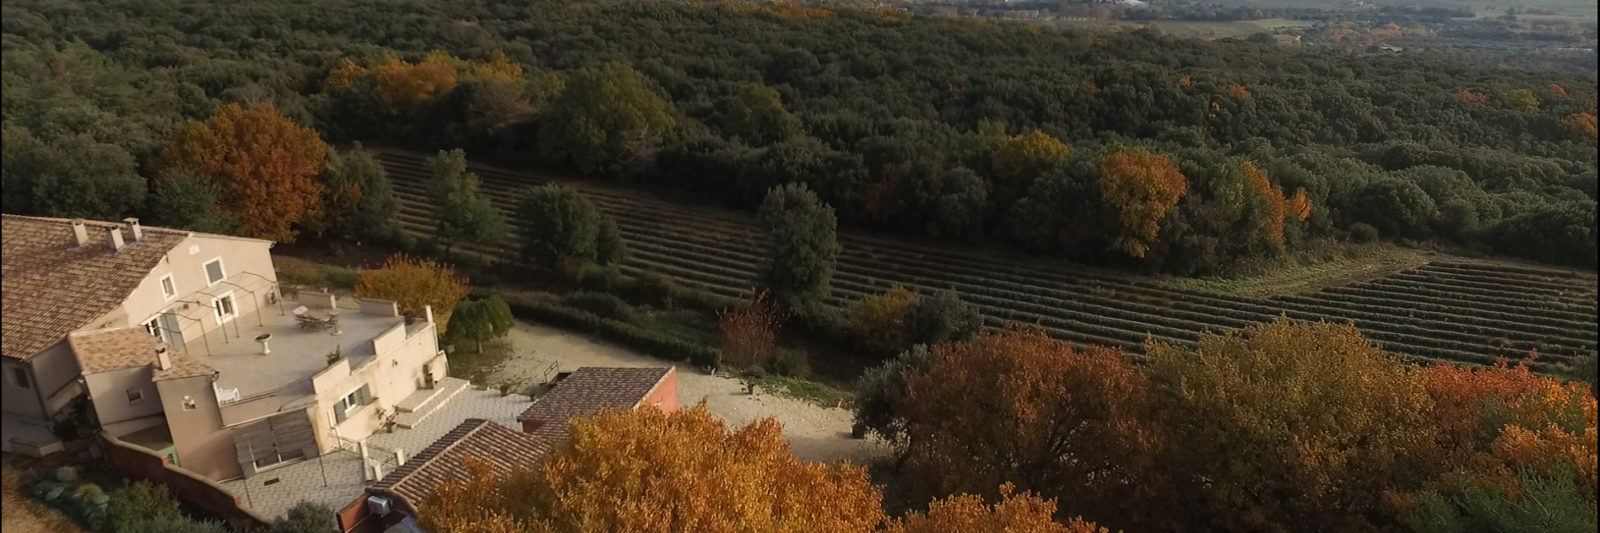 Gîte en Ardèche l'automne